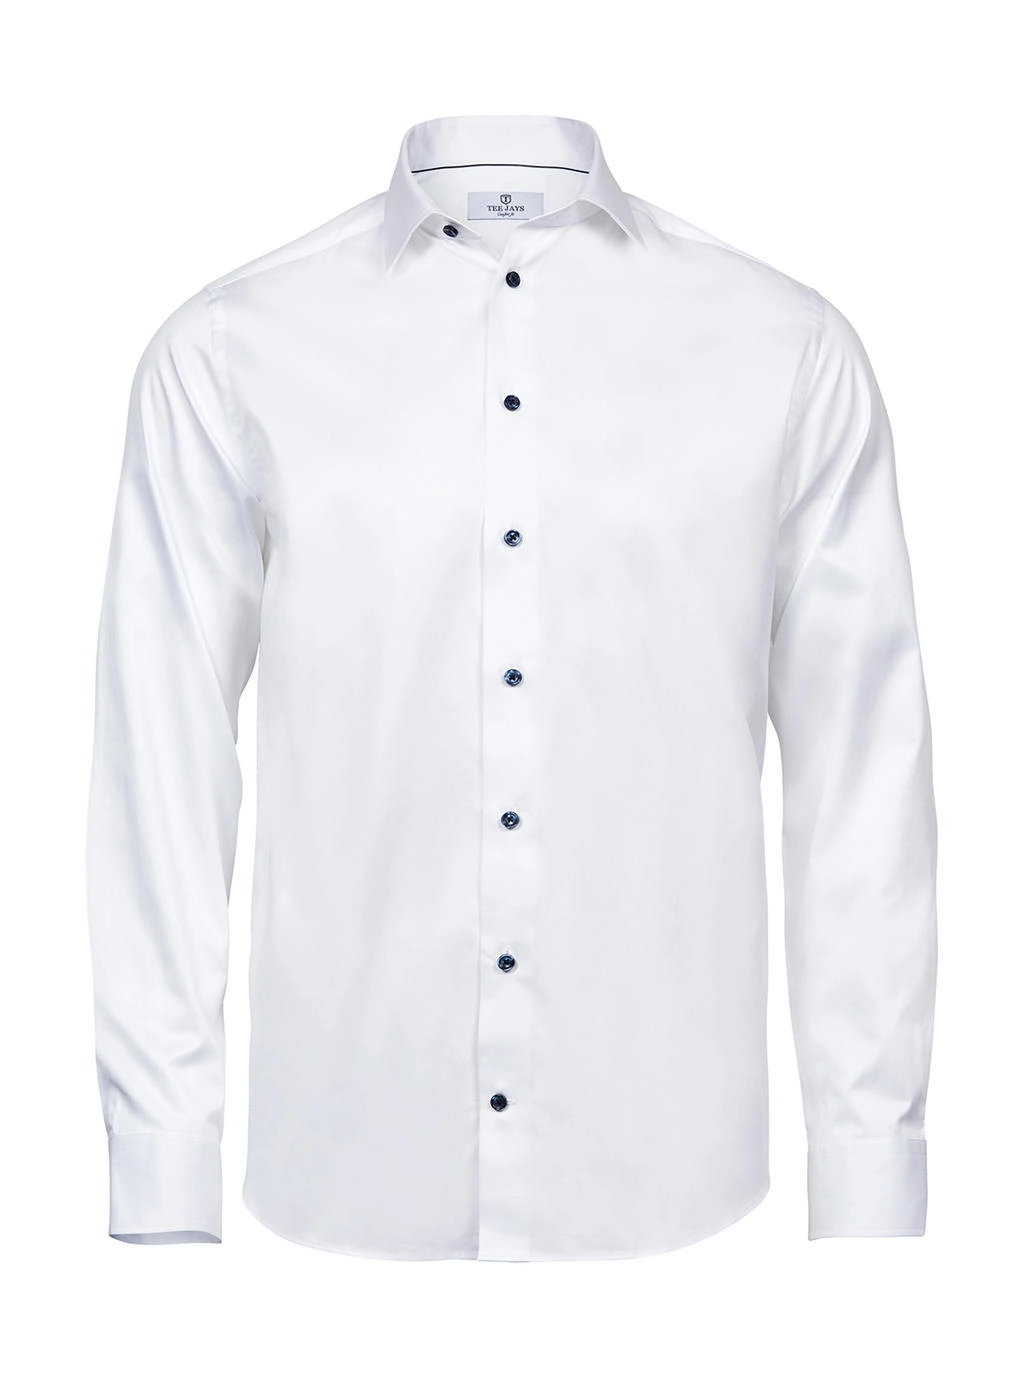 Luxury Shirt Comfort Fit zum Besticken und Bedrucken in der Farbe White/Blue mit Ihren Logo, Schriftzug oder Motiv.